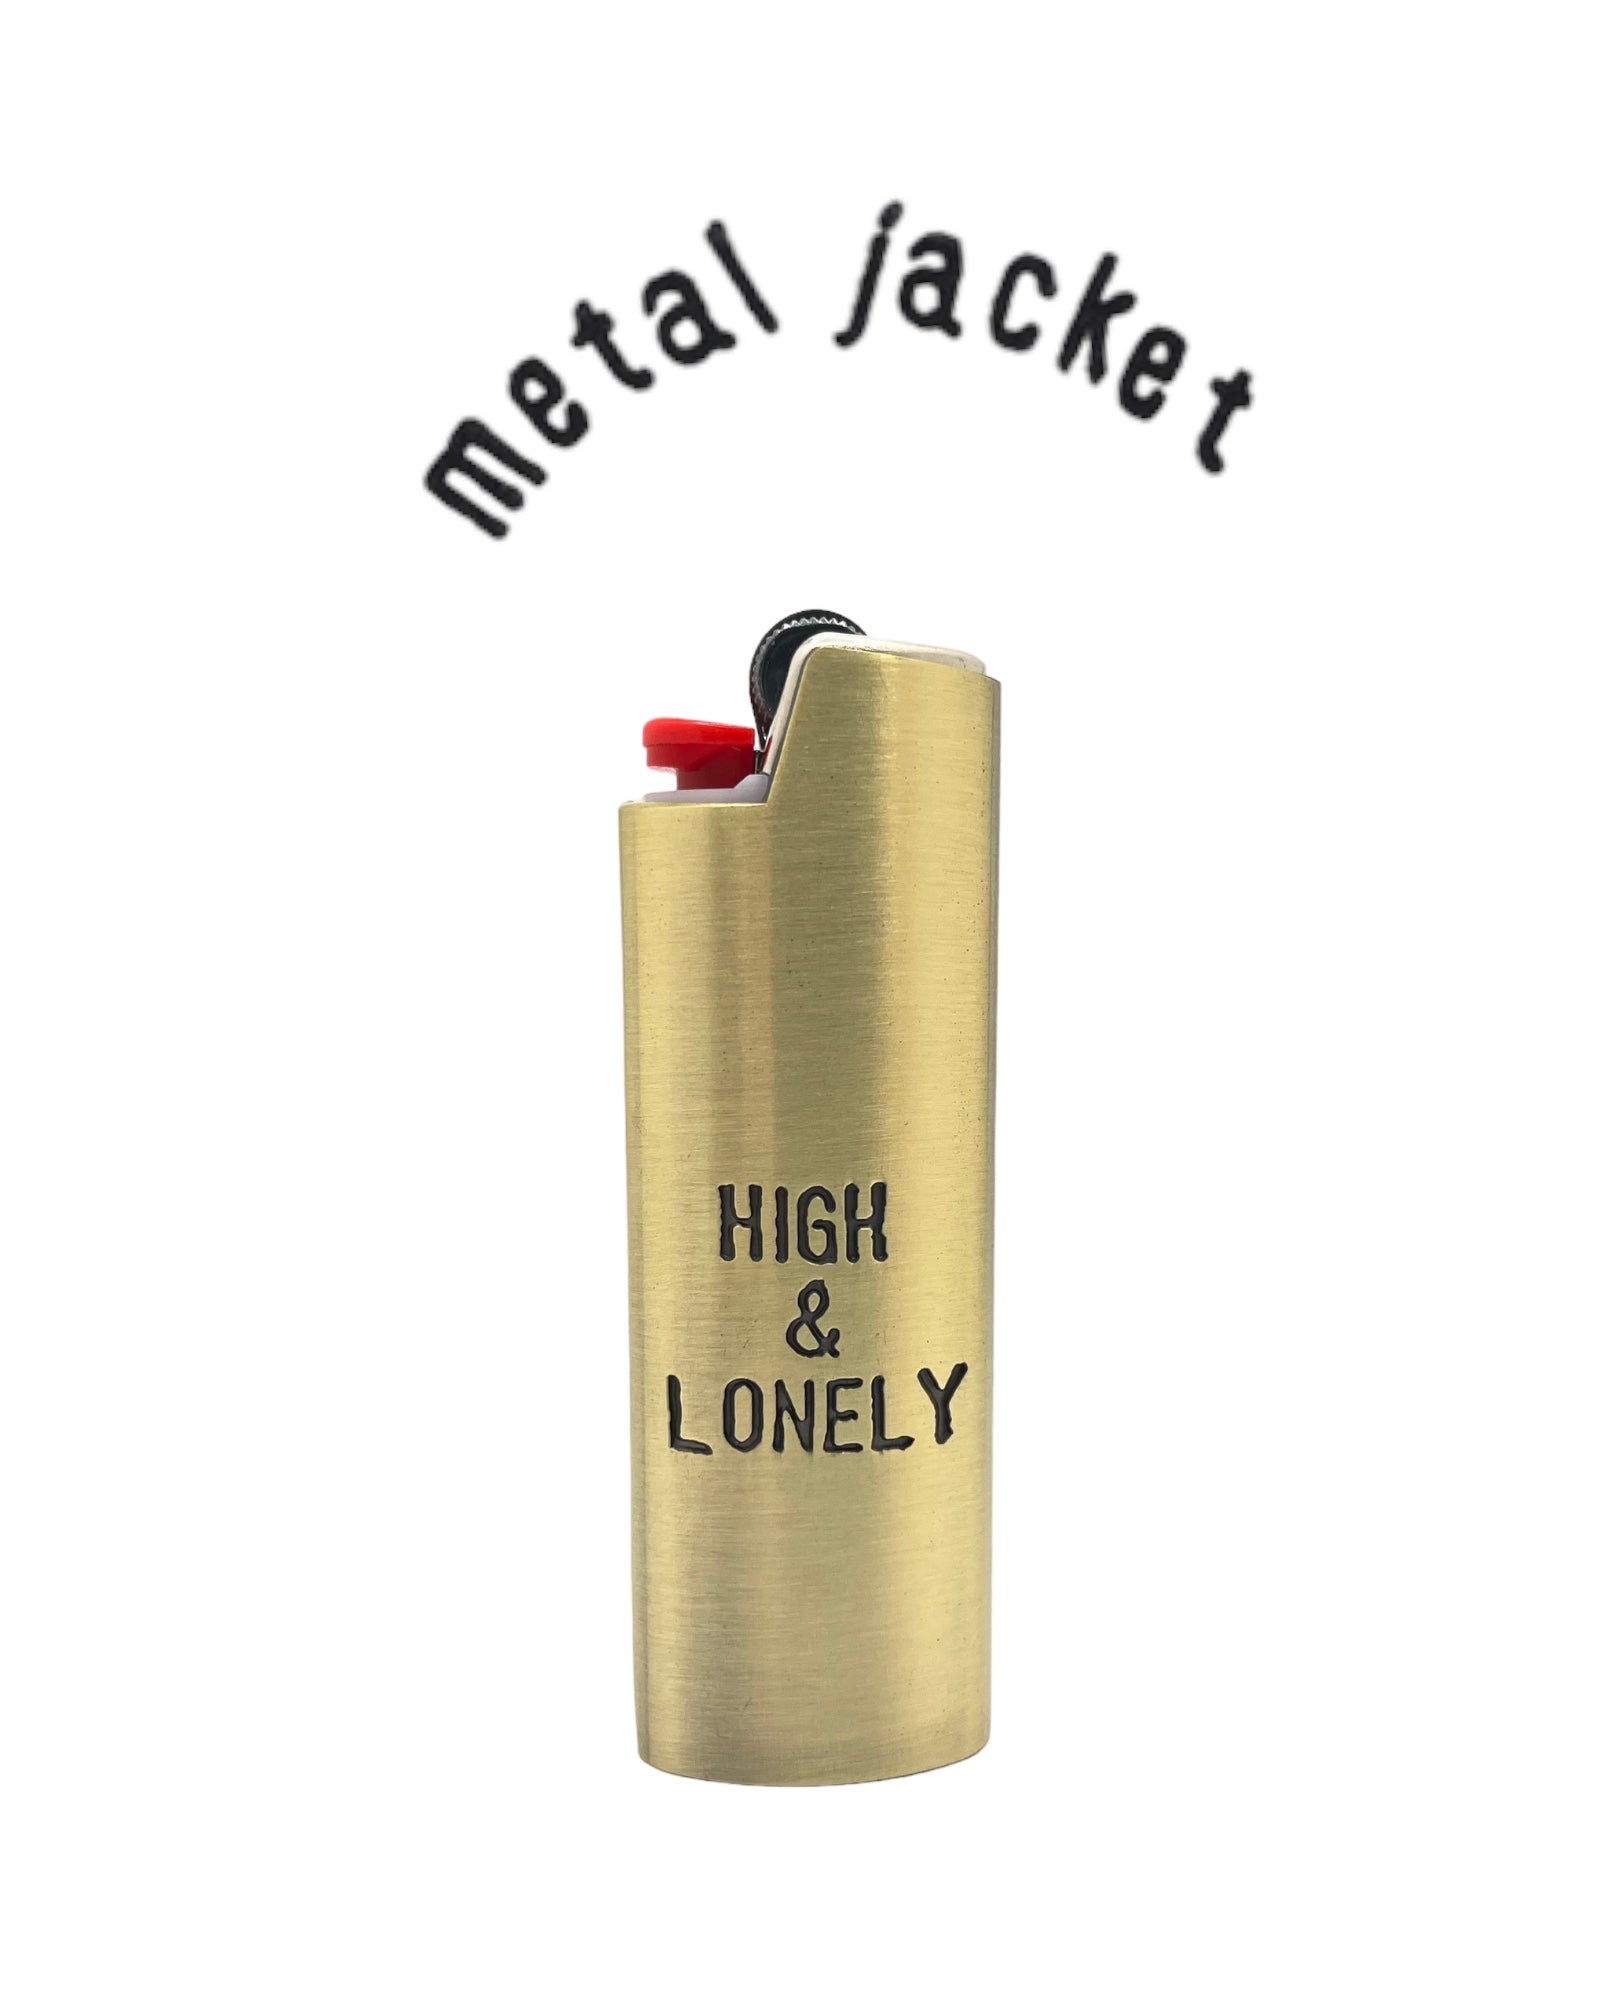 Metal Jacket Lighter Case – High & Lonely